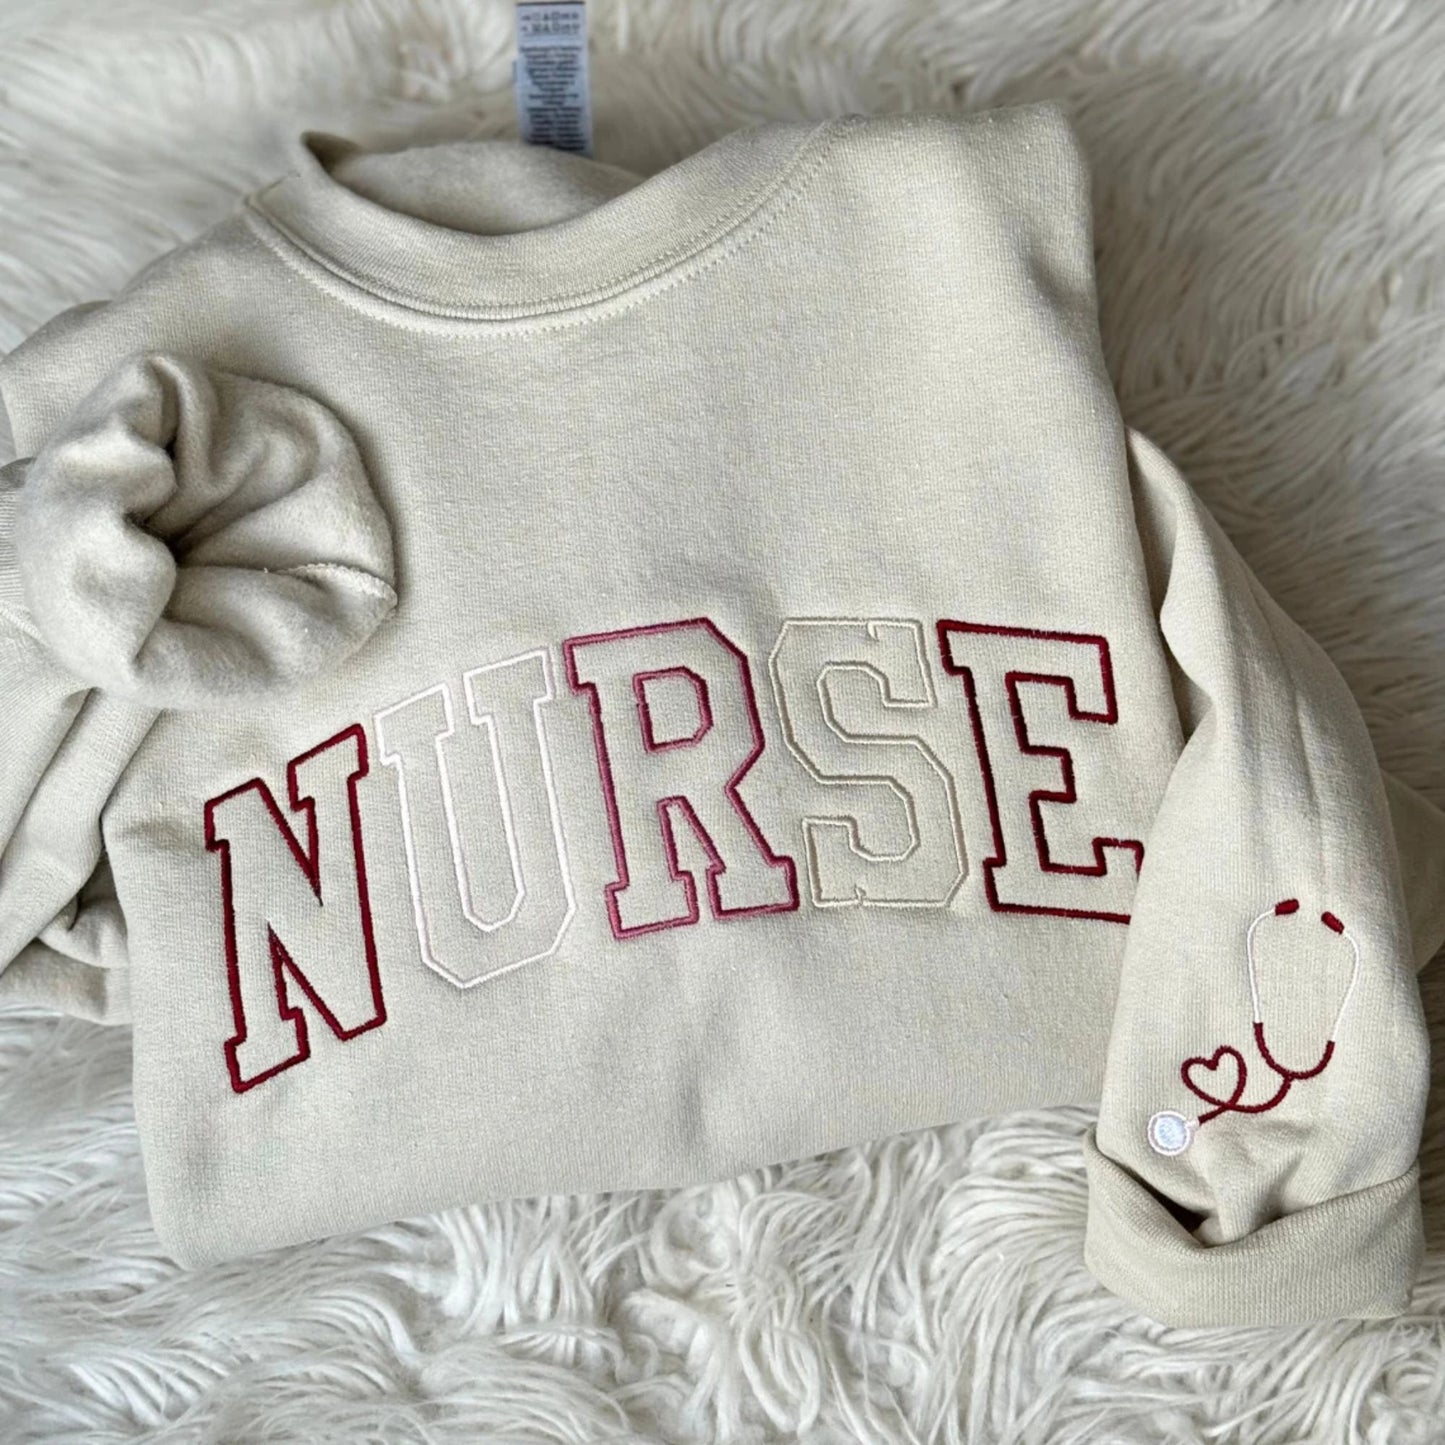 Embroidered Nurse Sweatshirt, Nurse Gift